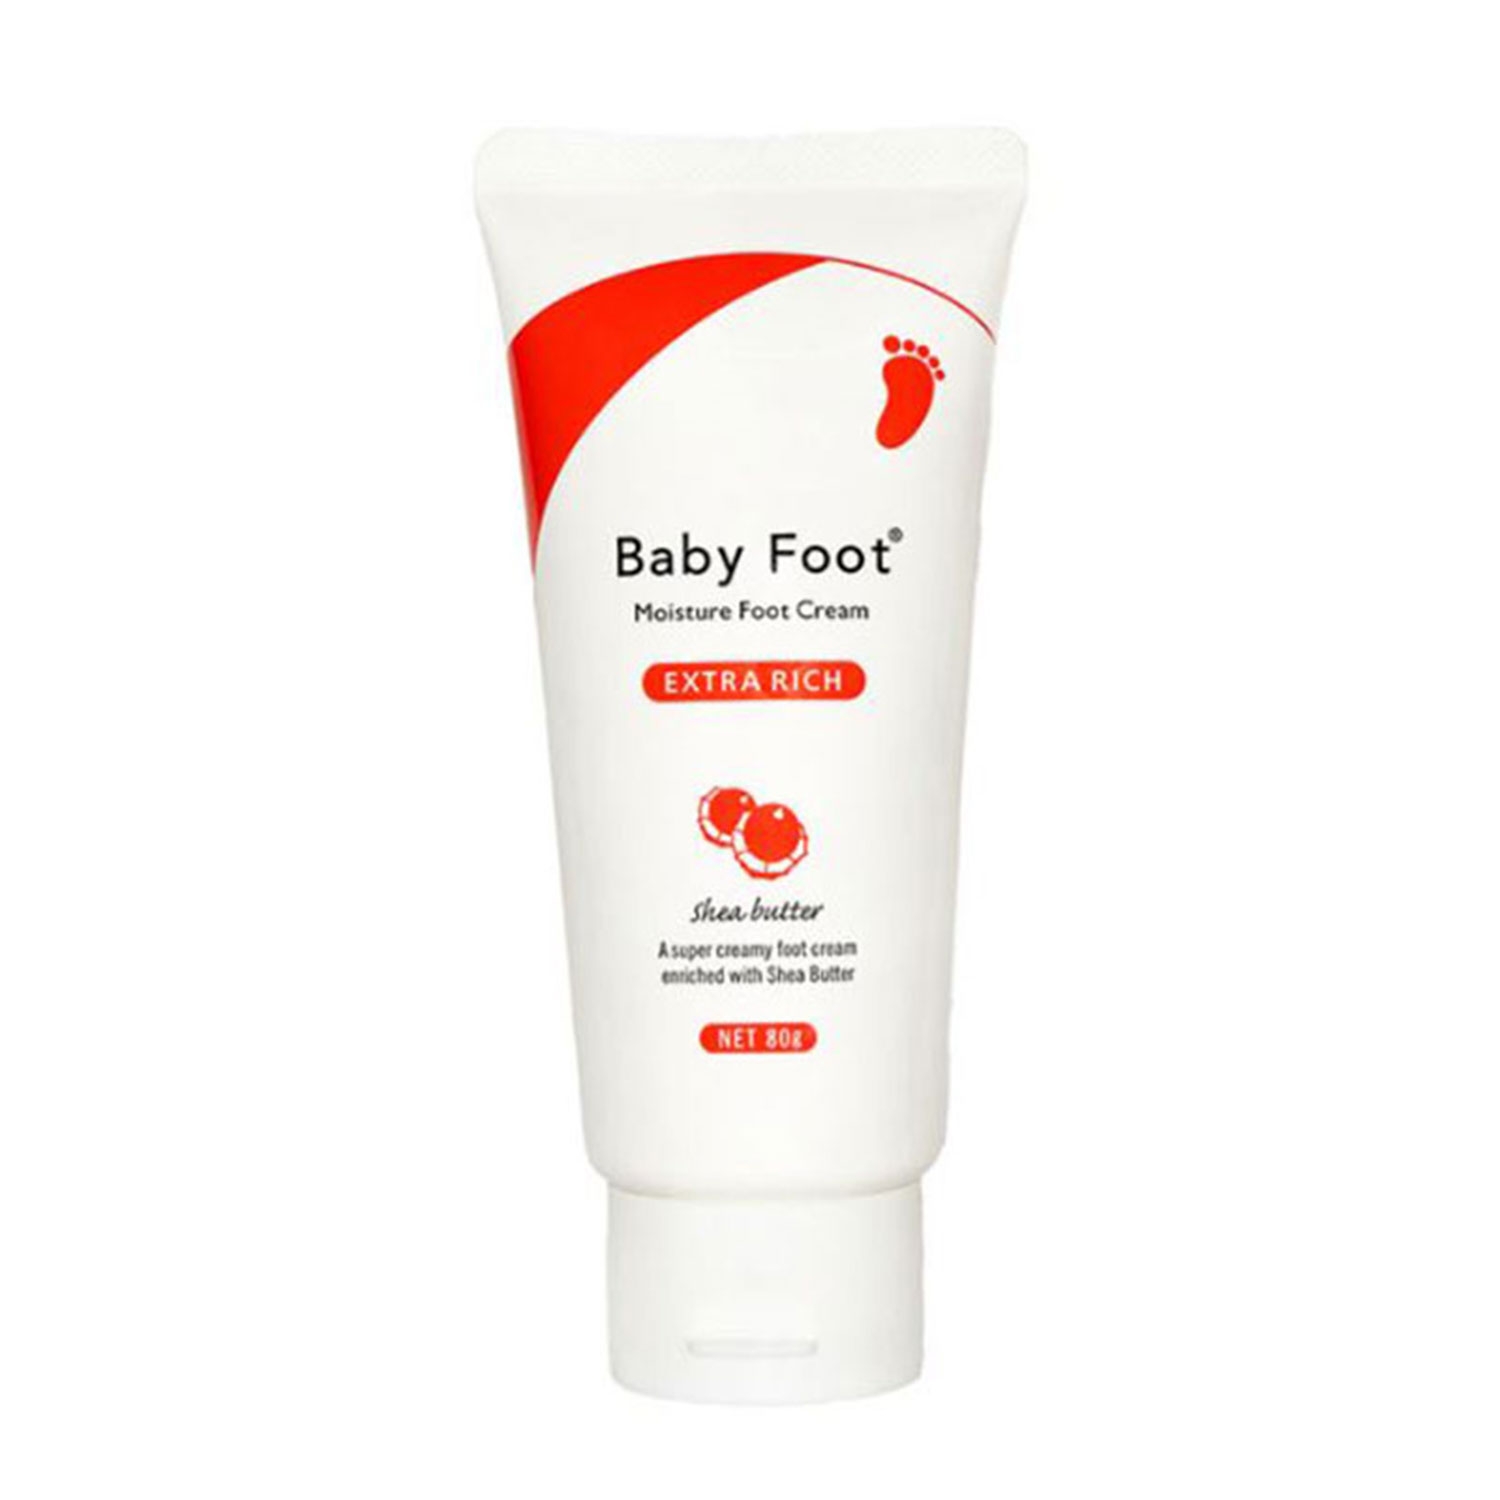 Produktbild von Baby Foot - Extra Rich Cream